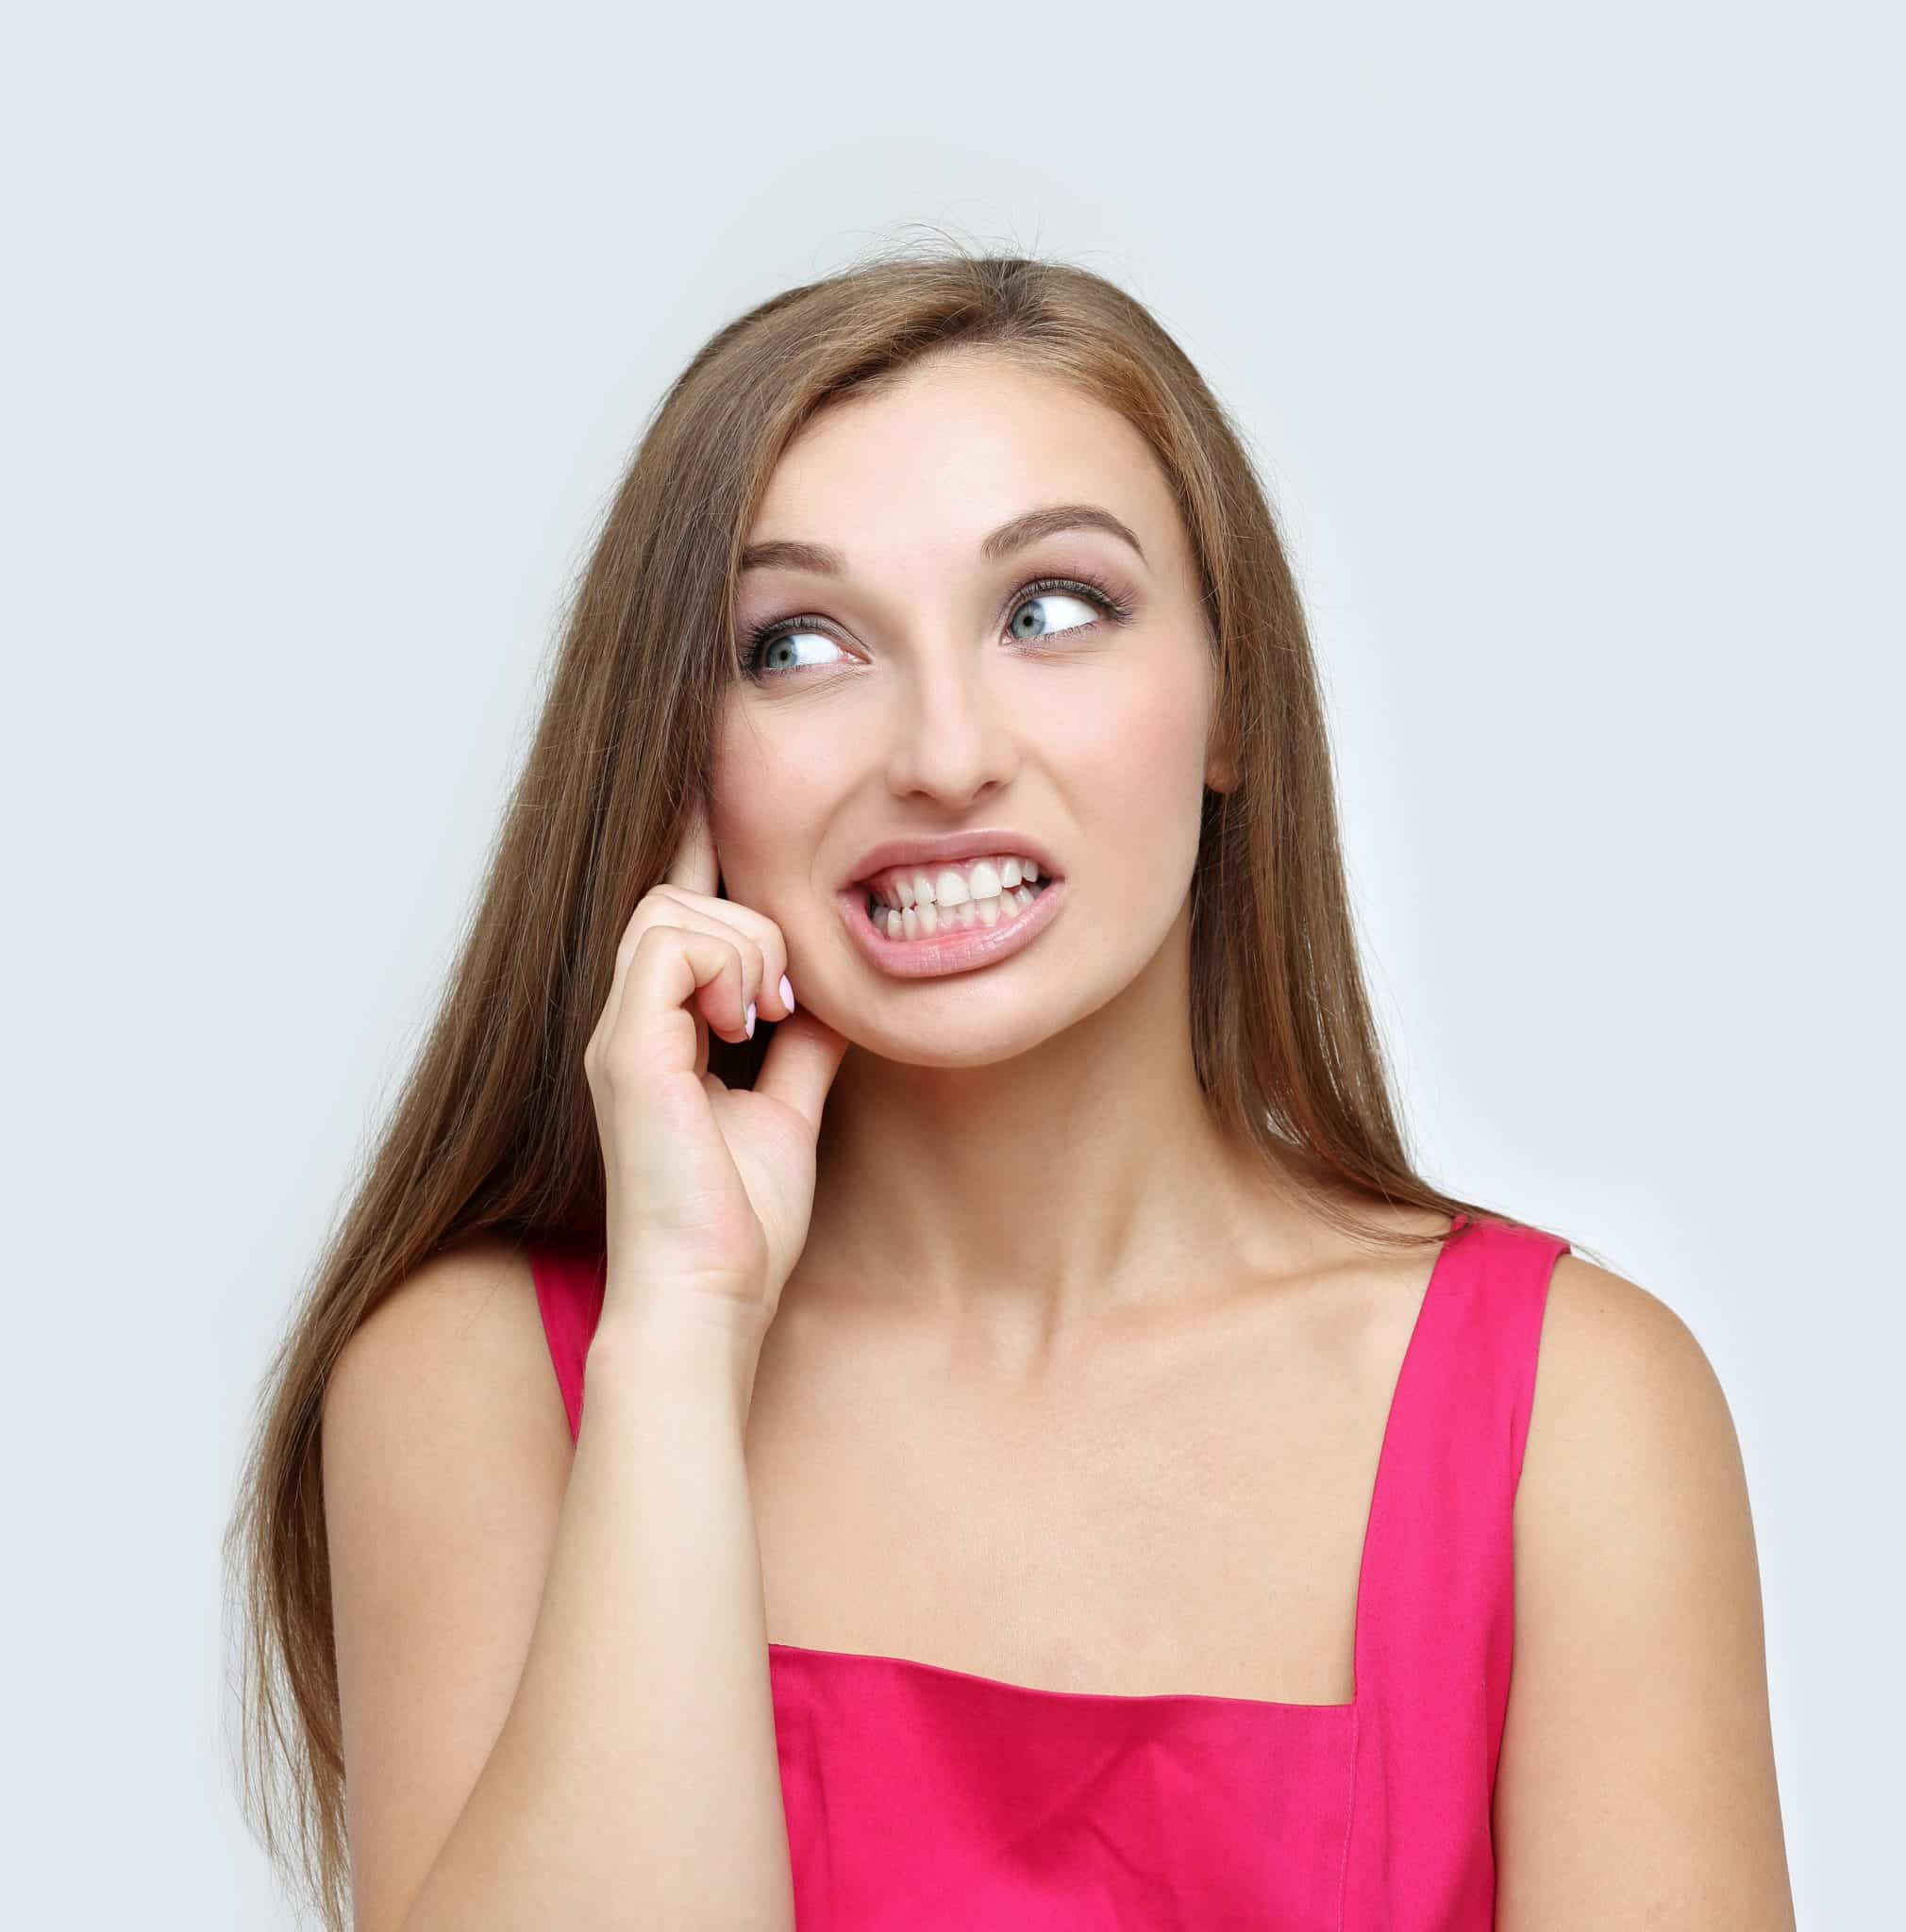 Eine junge Frau hat einen ängstlichen Gesichtsausdruck wegen ihres Problems mit dem Zähneknirschen.